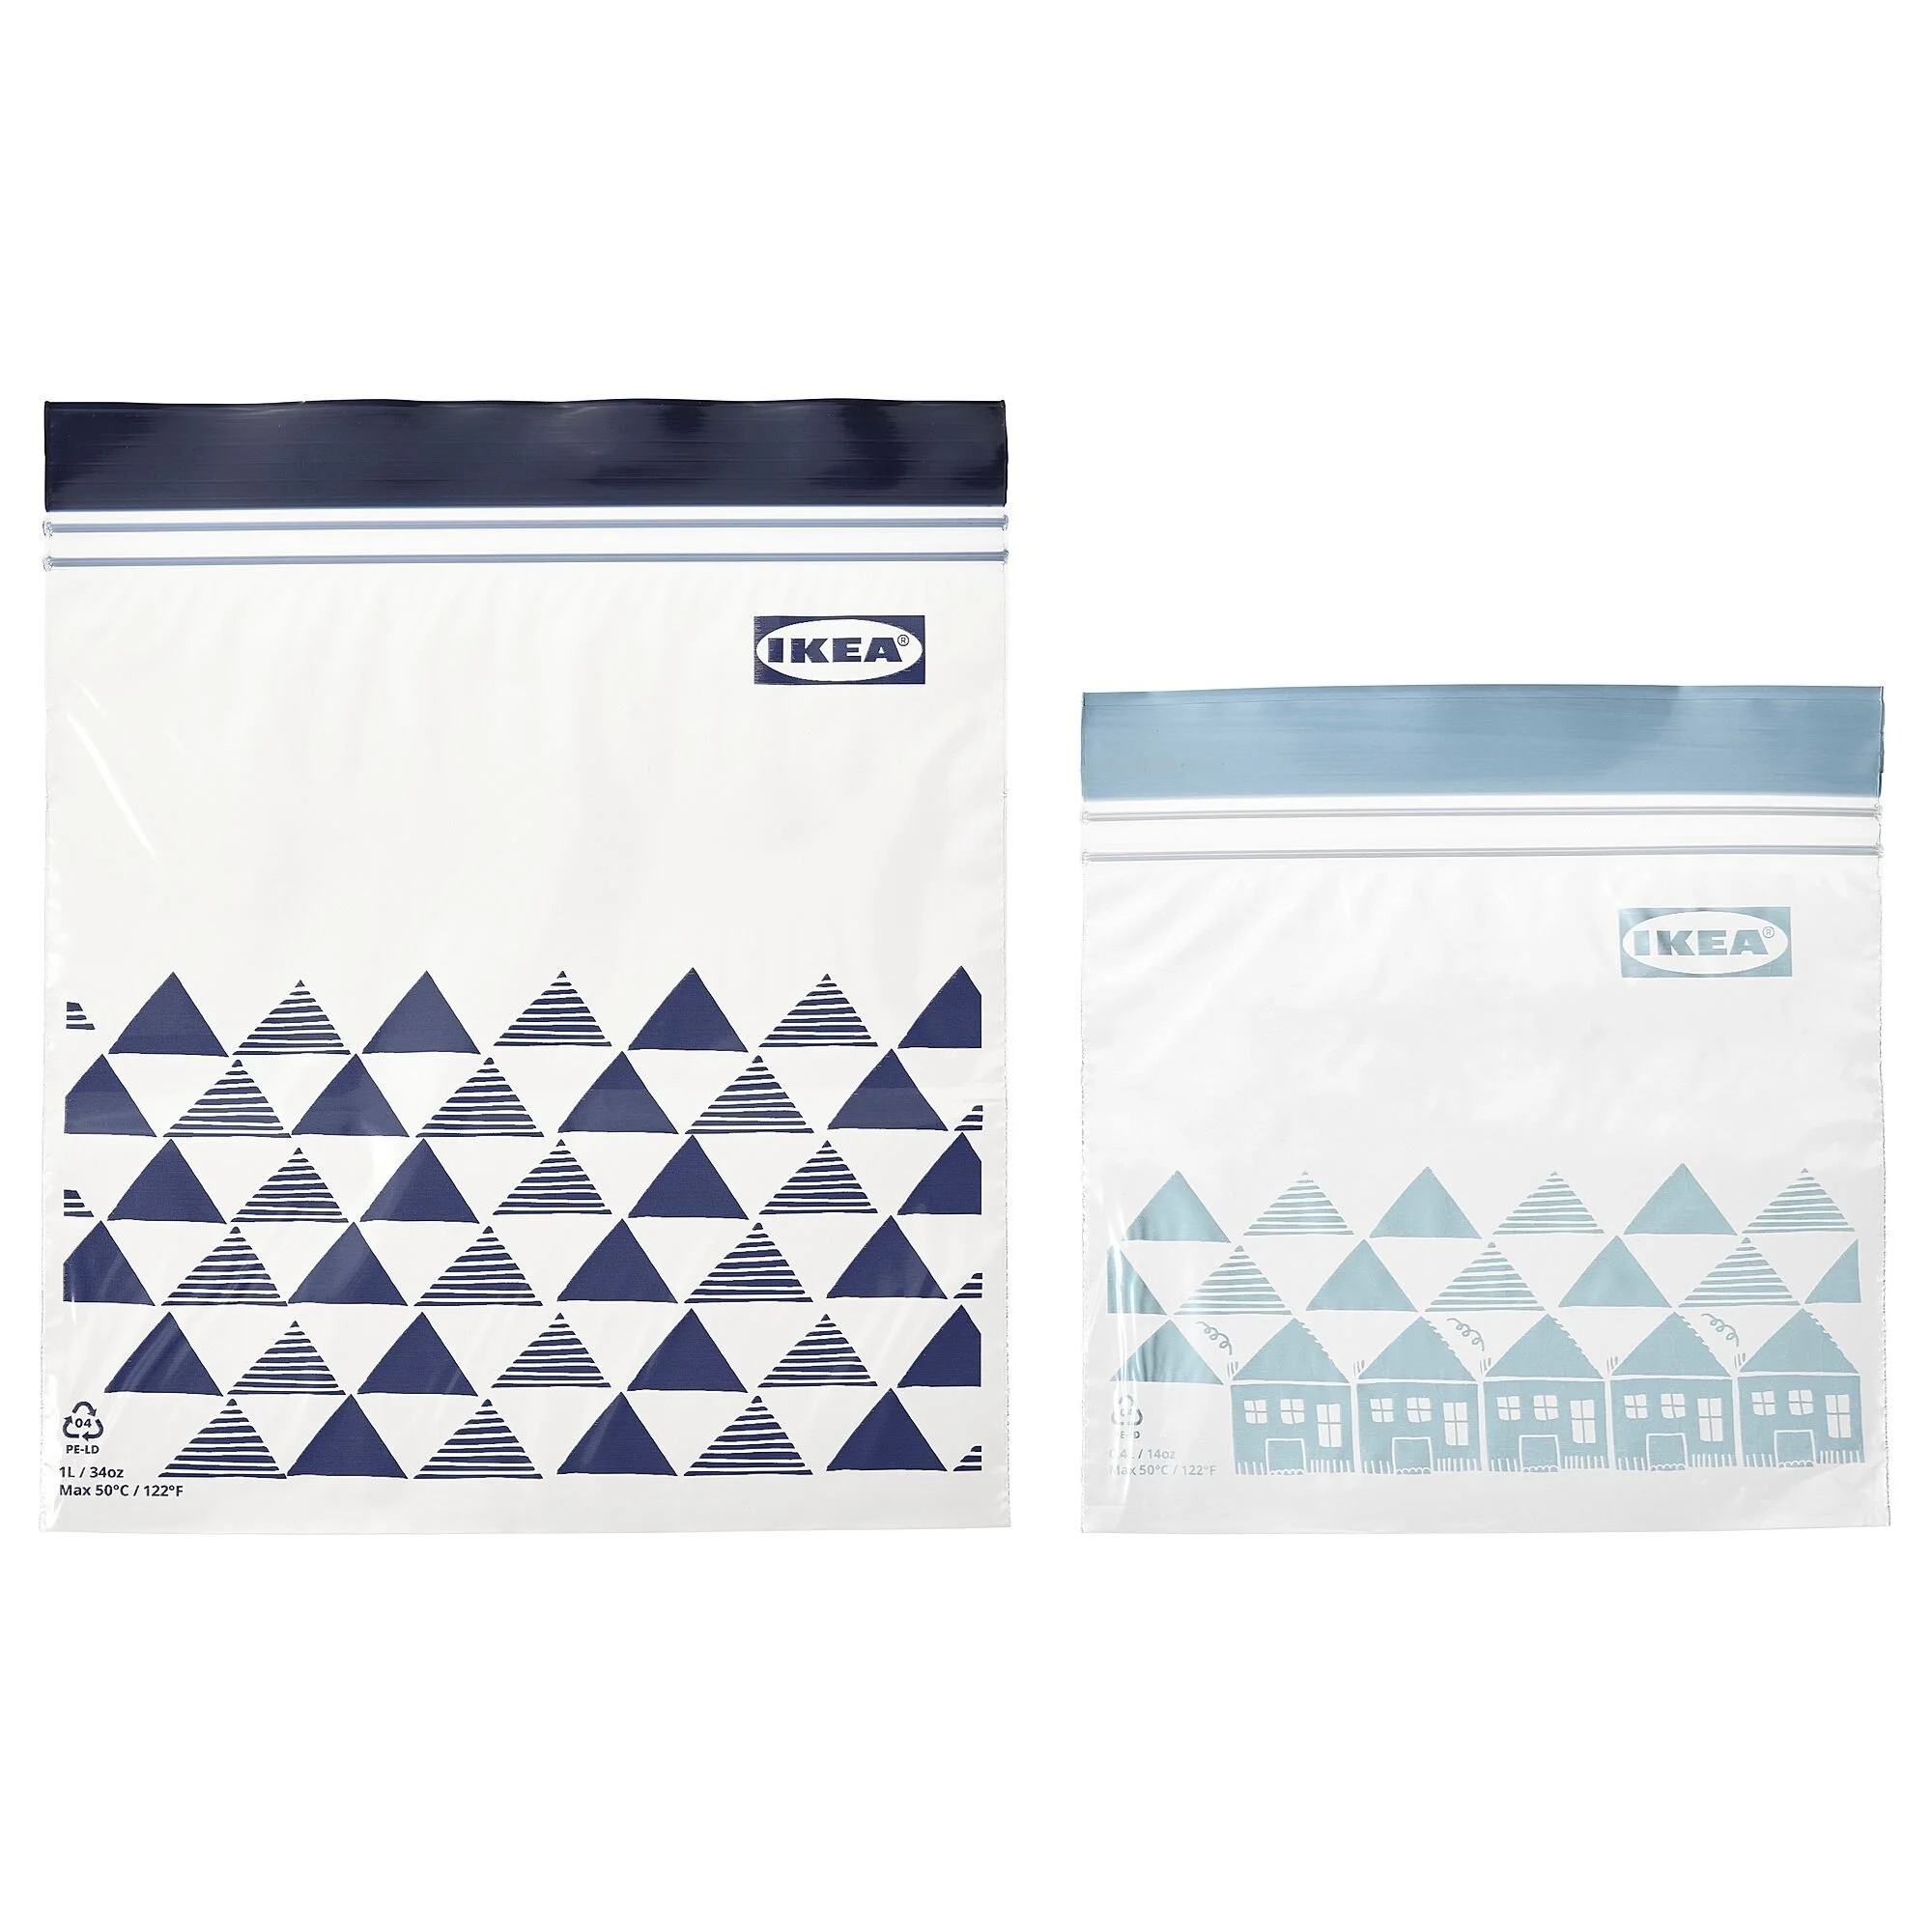 İSTAD Bağlı çanta, mavi-açıq mavi, 1 L və 0,4 L, 60 paket